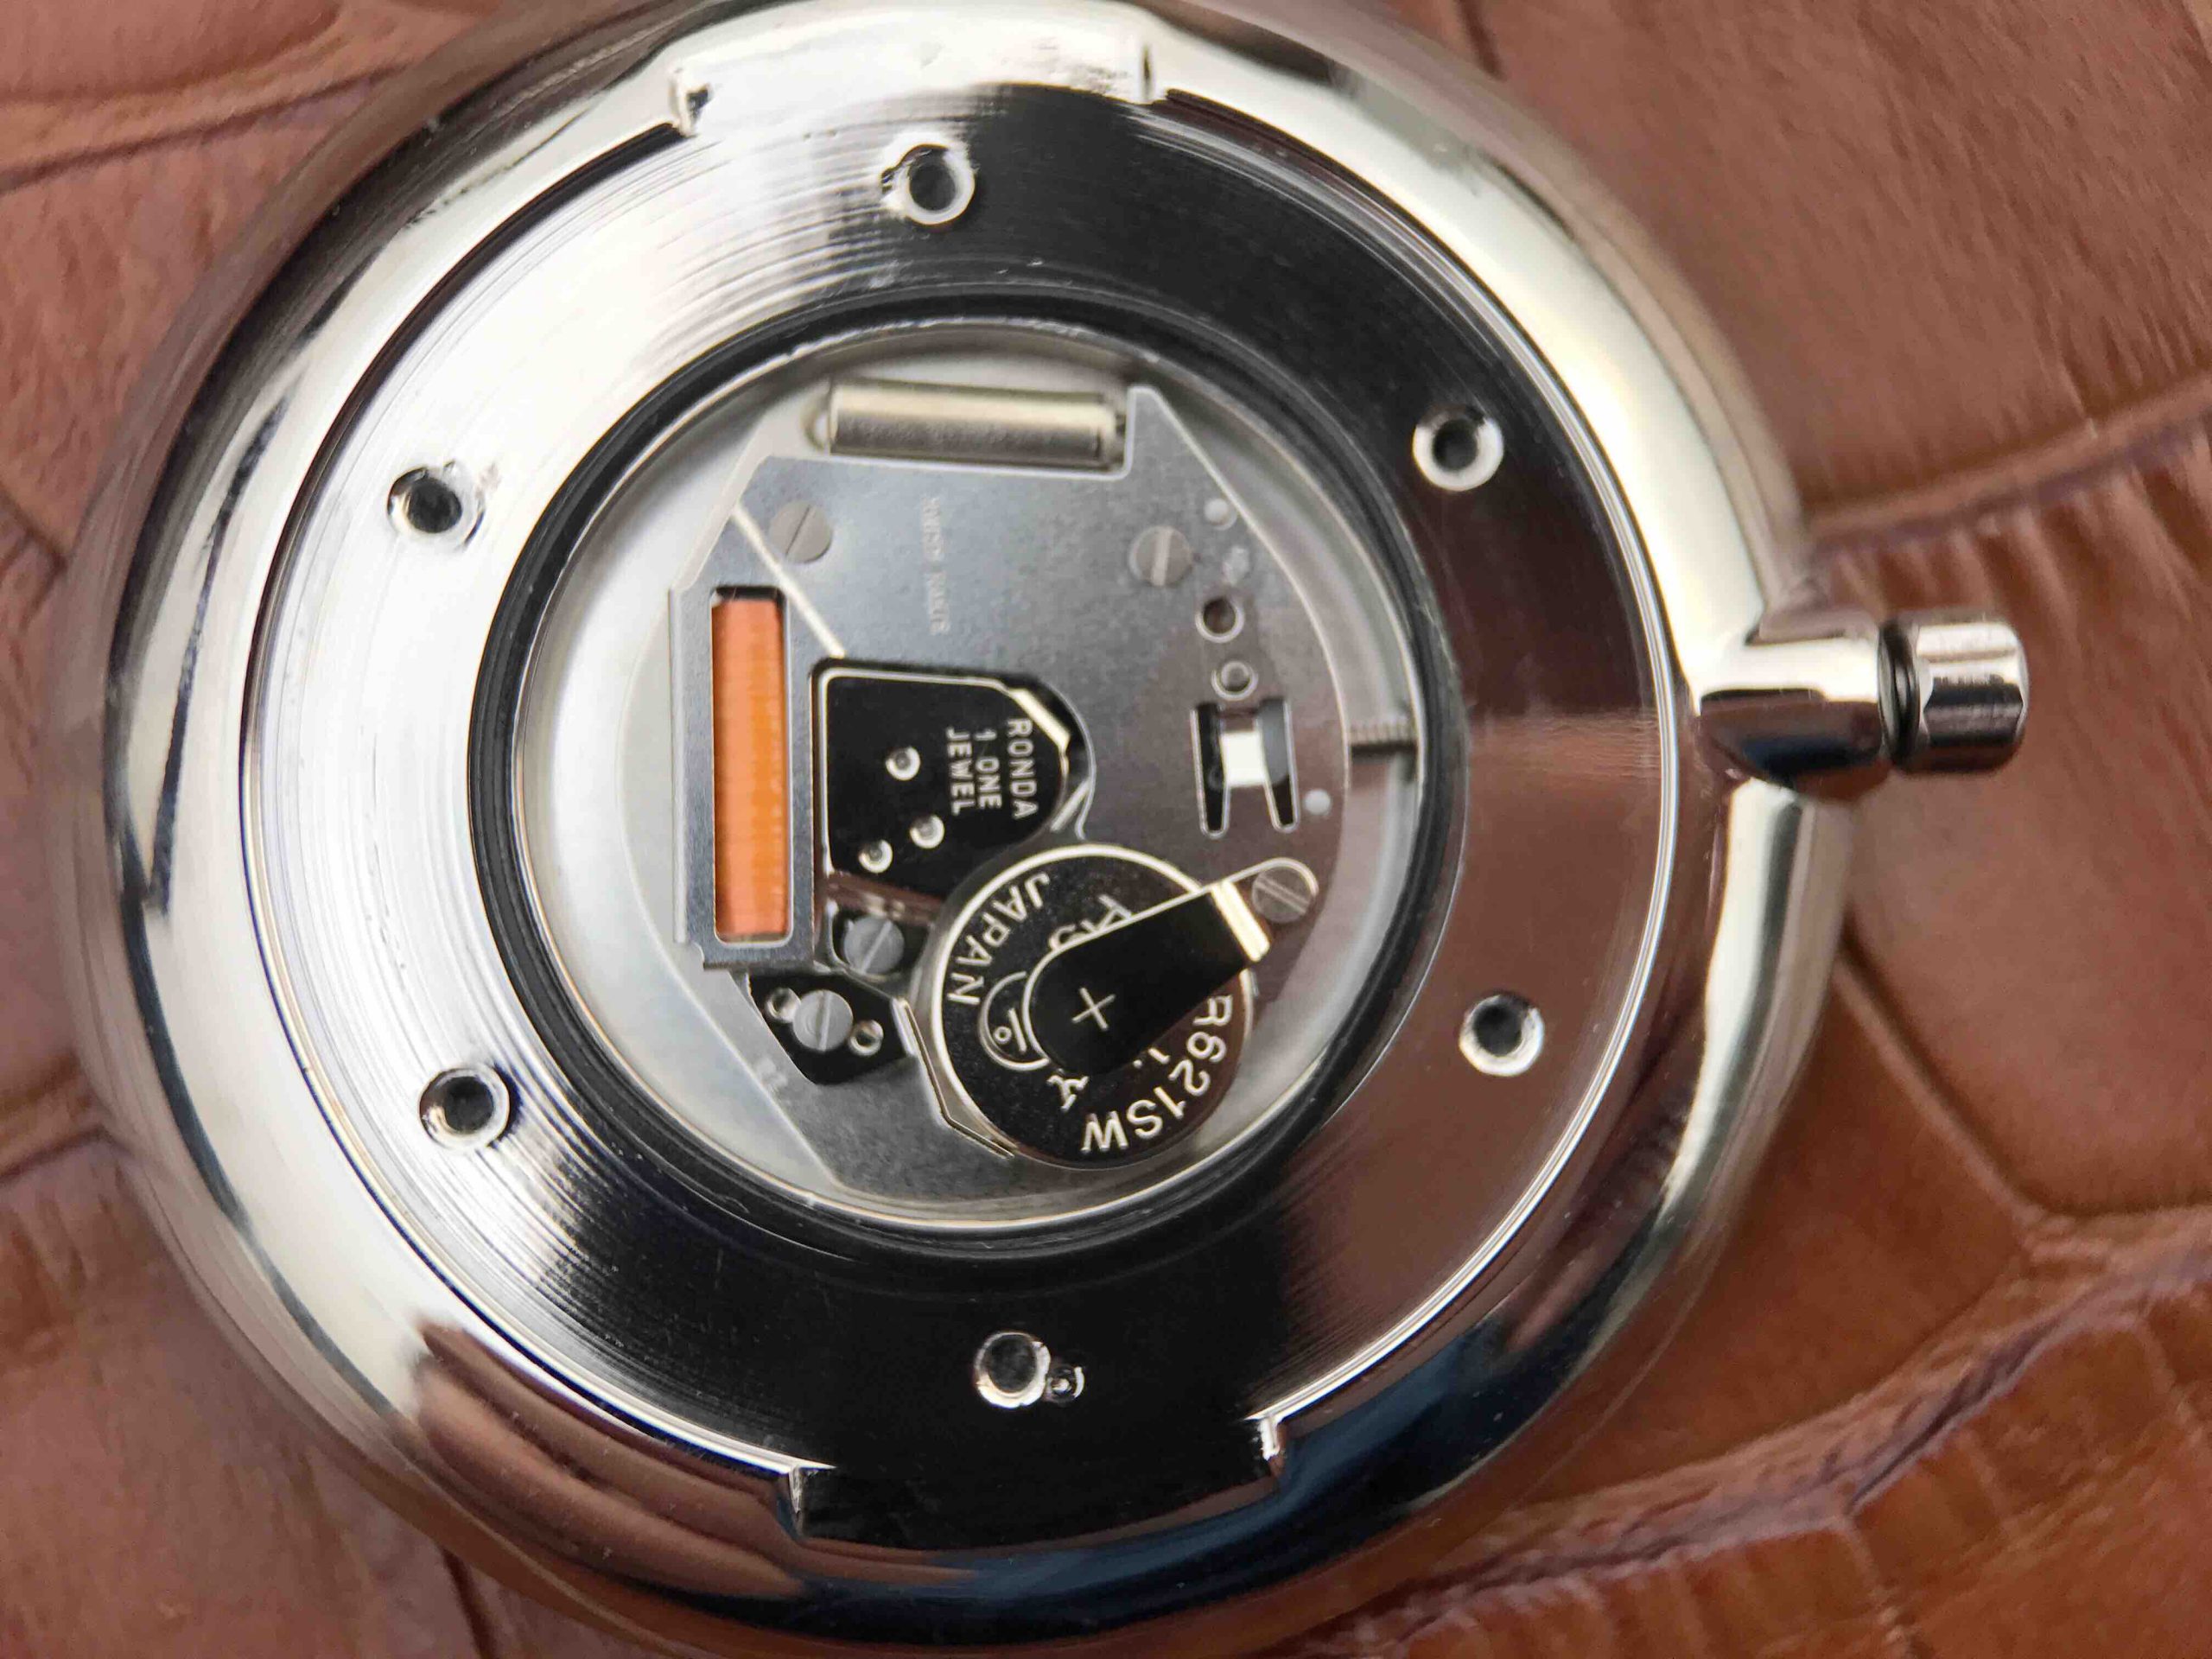 2023012614103020 scaled - 浪琴嘉嵐復刻手錶的手錶得多少錢 JF浪琴嘉嵐L4.755.4.11.6 自動石英男錶￥2080